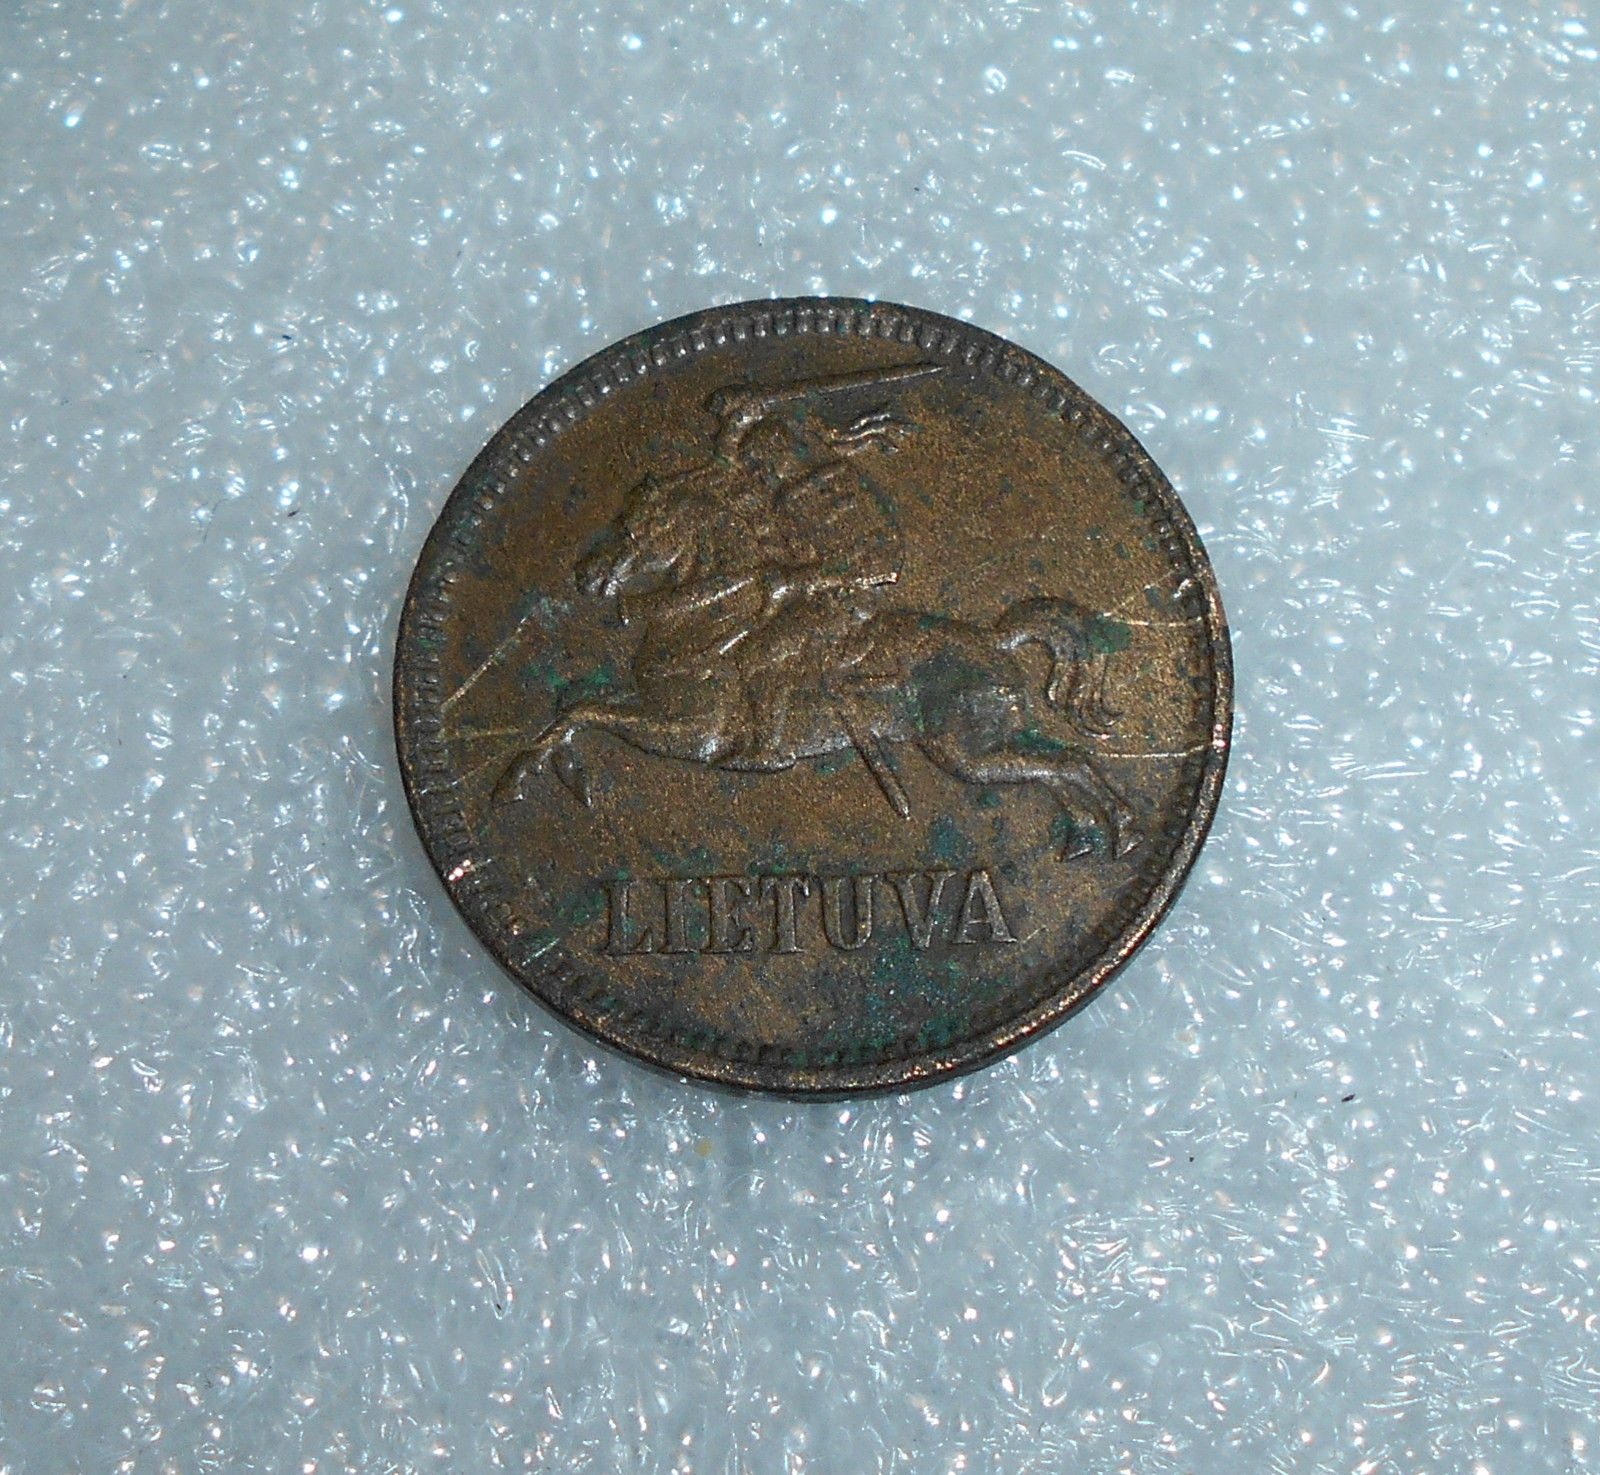 Lithuania 5 Centai, 1936 | eBay